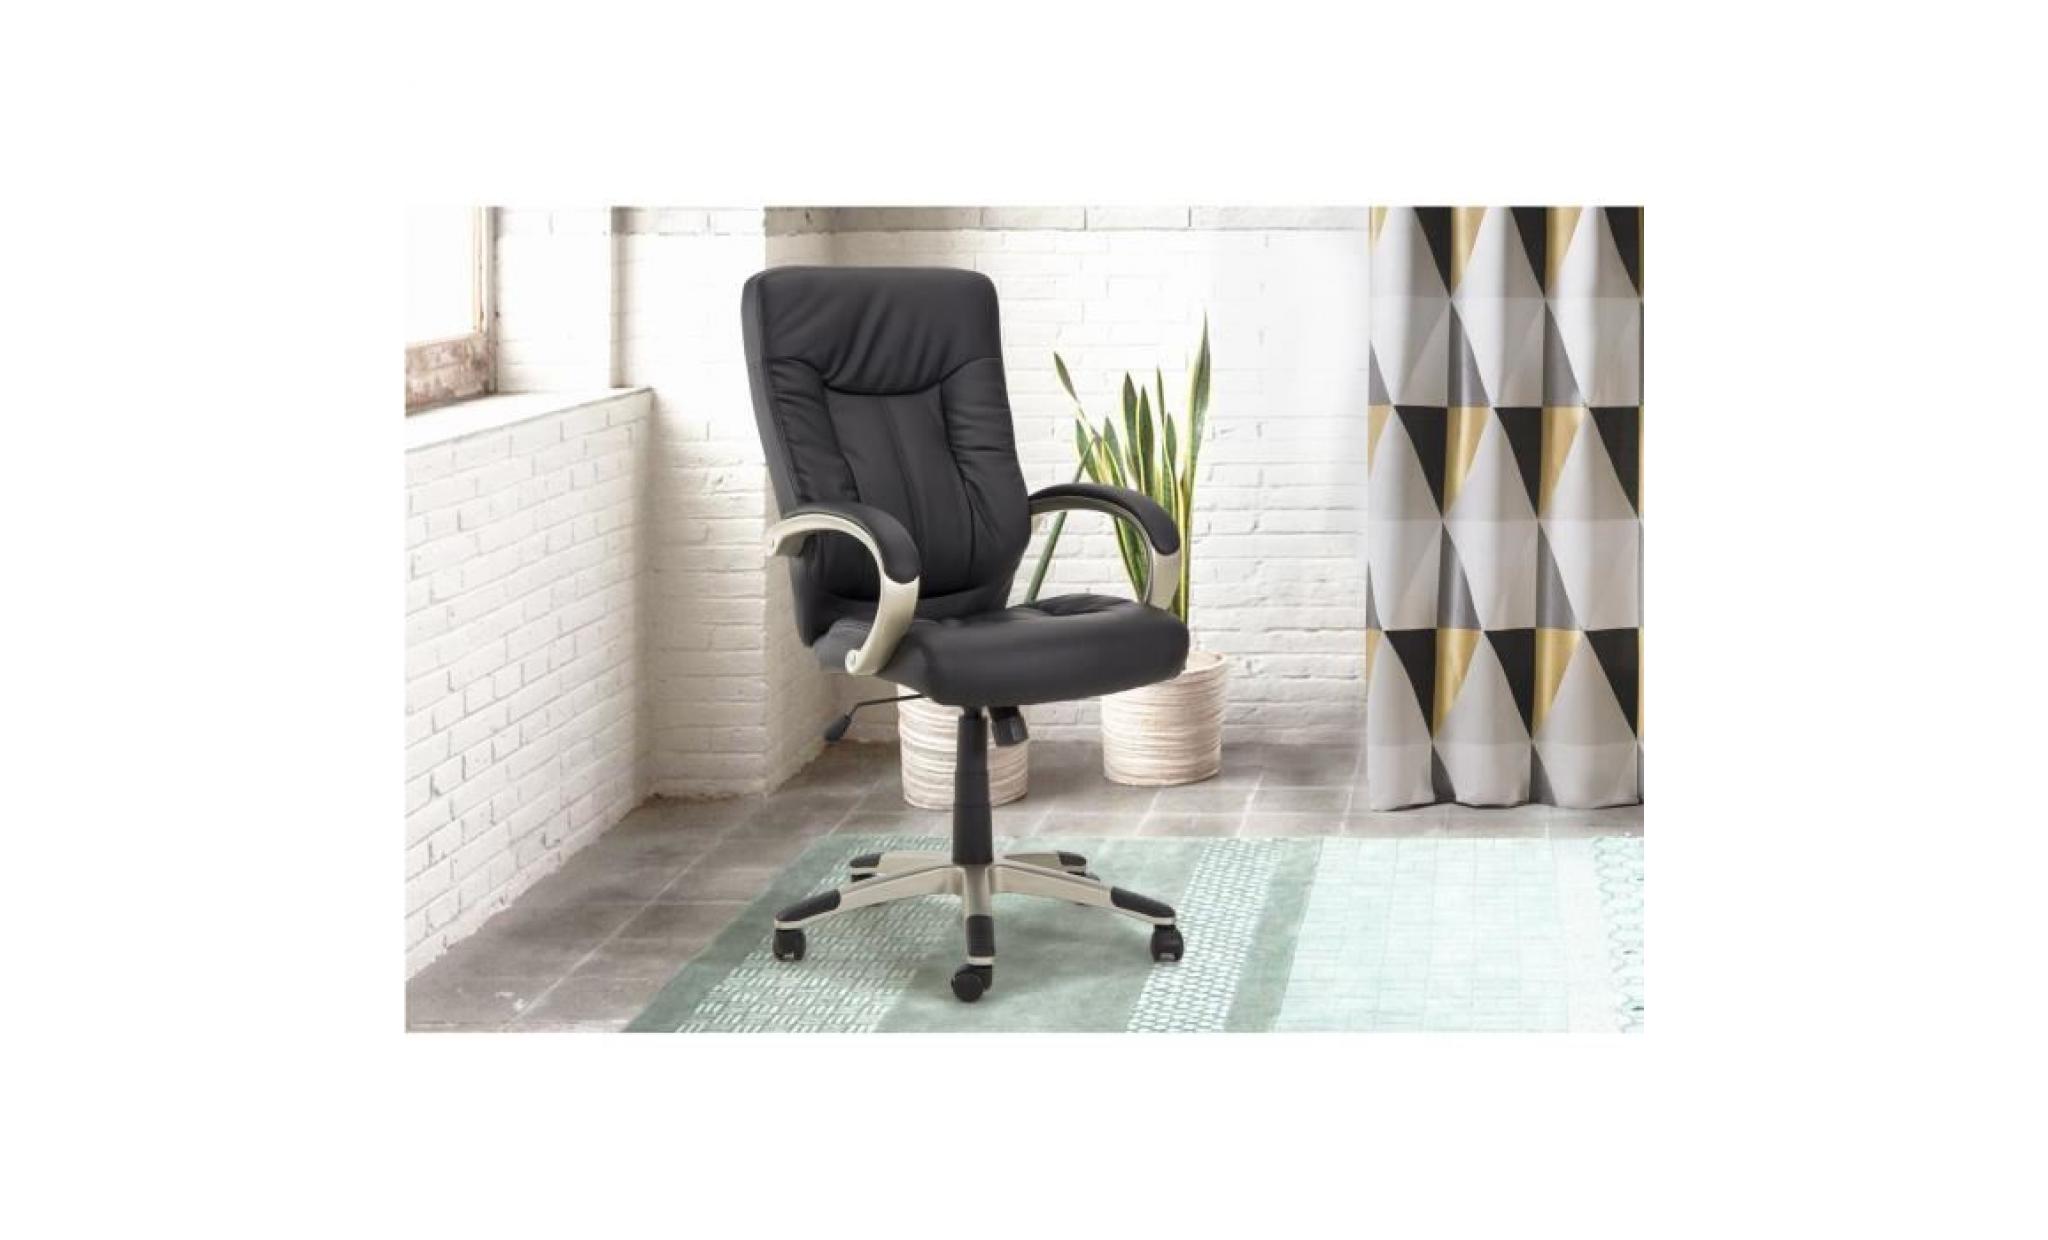 president fauteuil bureau style classique   simili noir   l 49 x p 48 cm pas cher